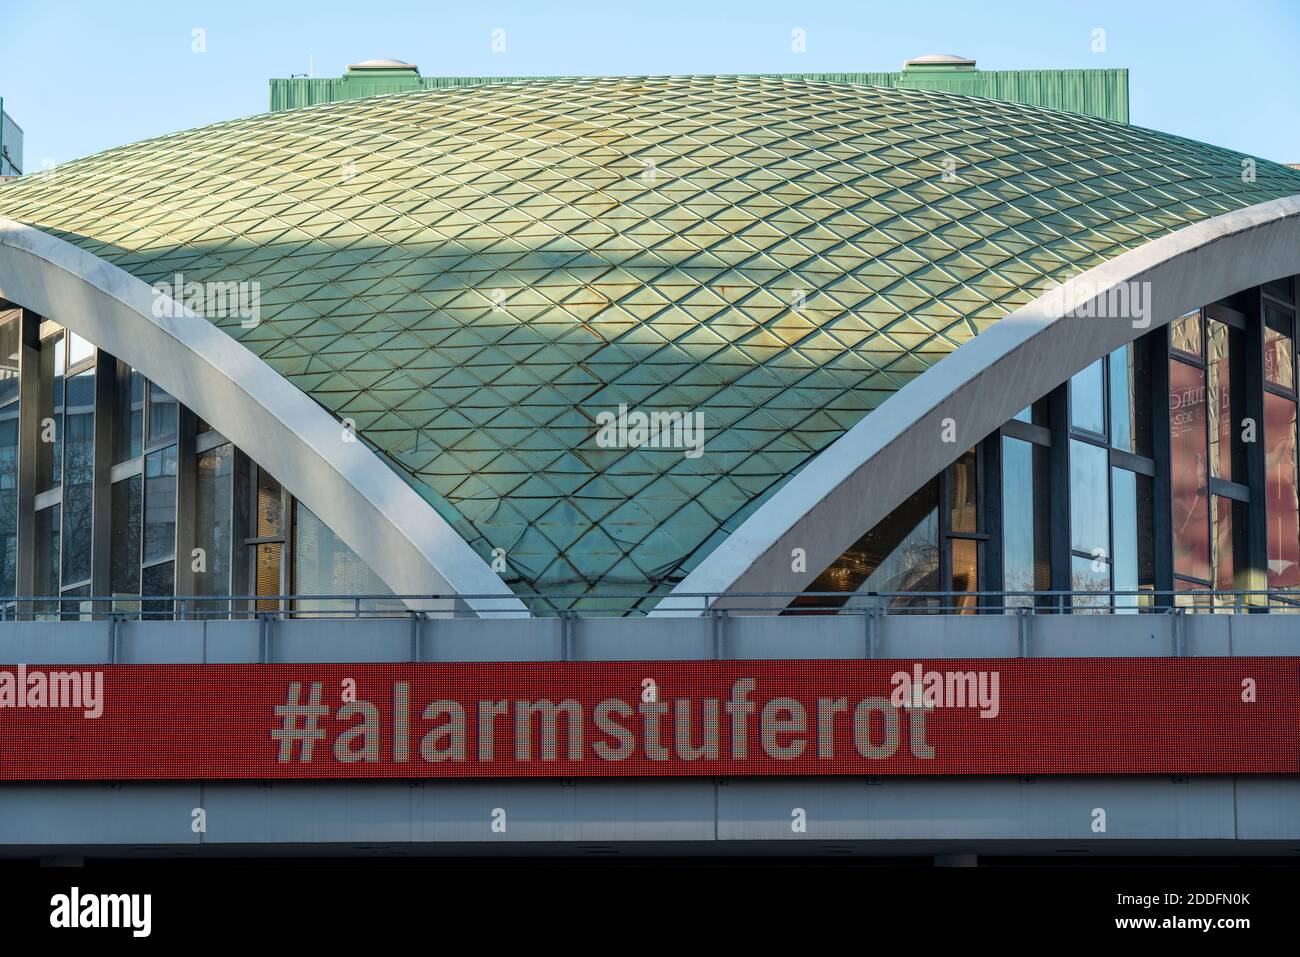 Geschlossenes Opernhaus, Aktion #alarmstuferot, wegen der Corona-Krise, während der zweiten Sperre, Dortmund, NRW, Deutschland Stockfoto